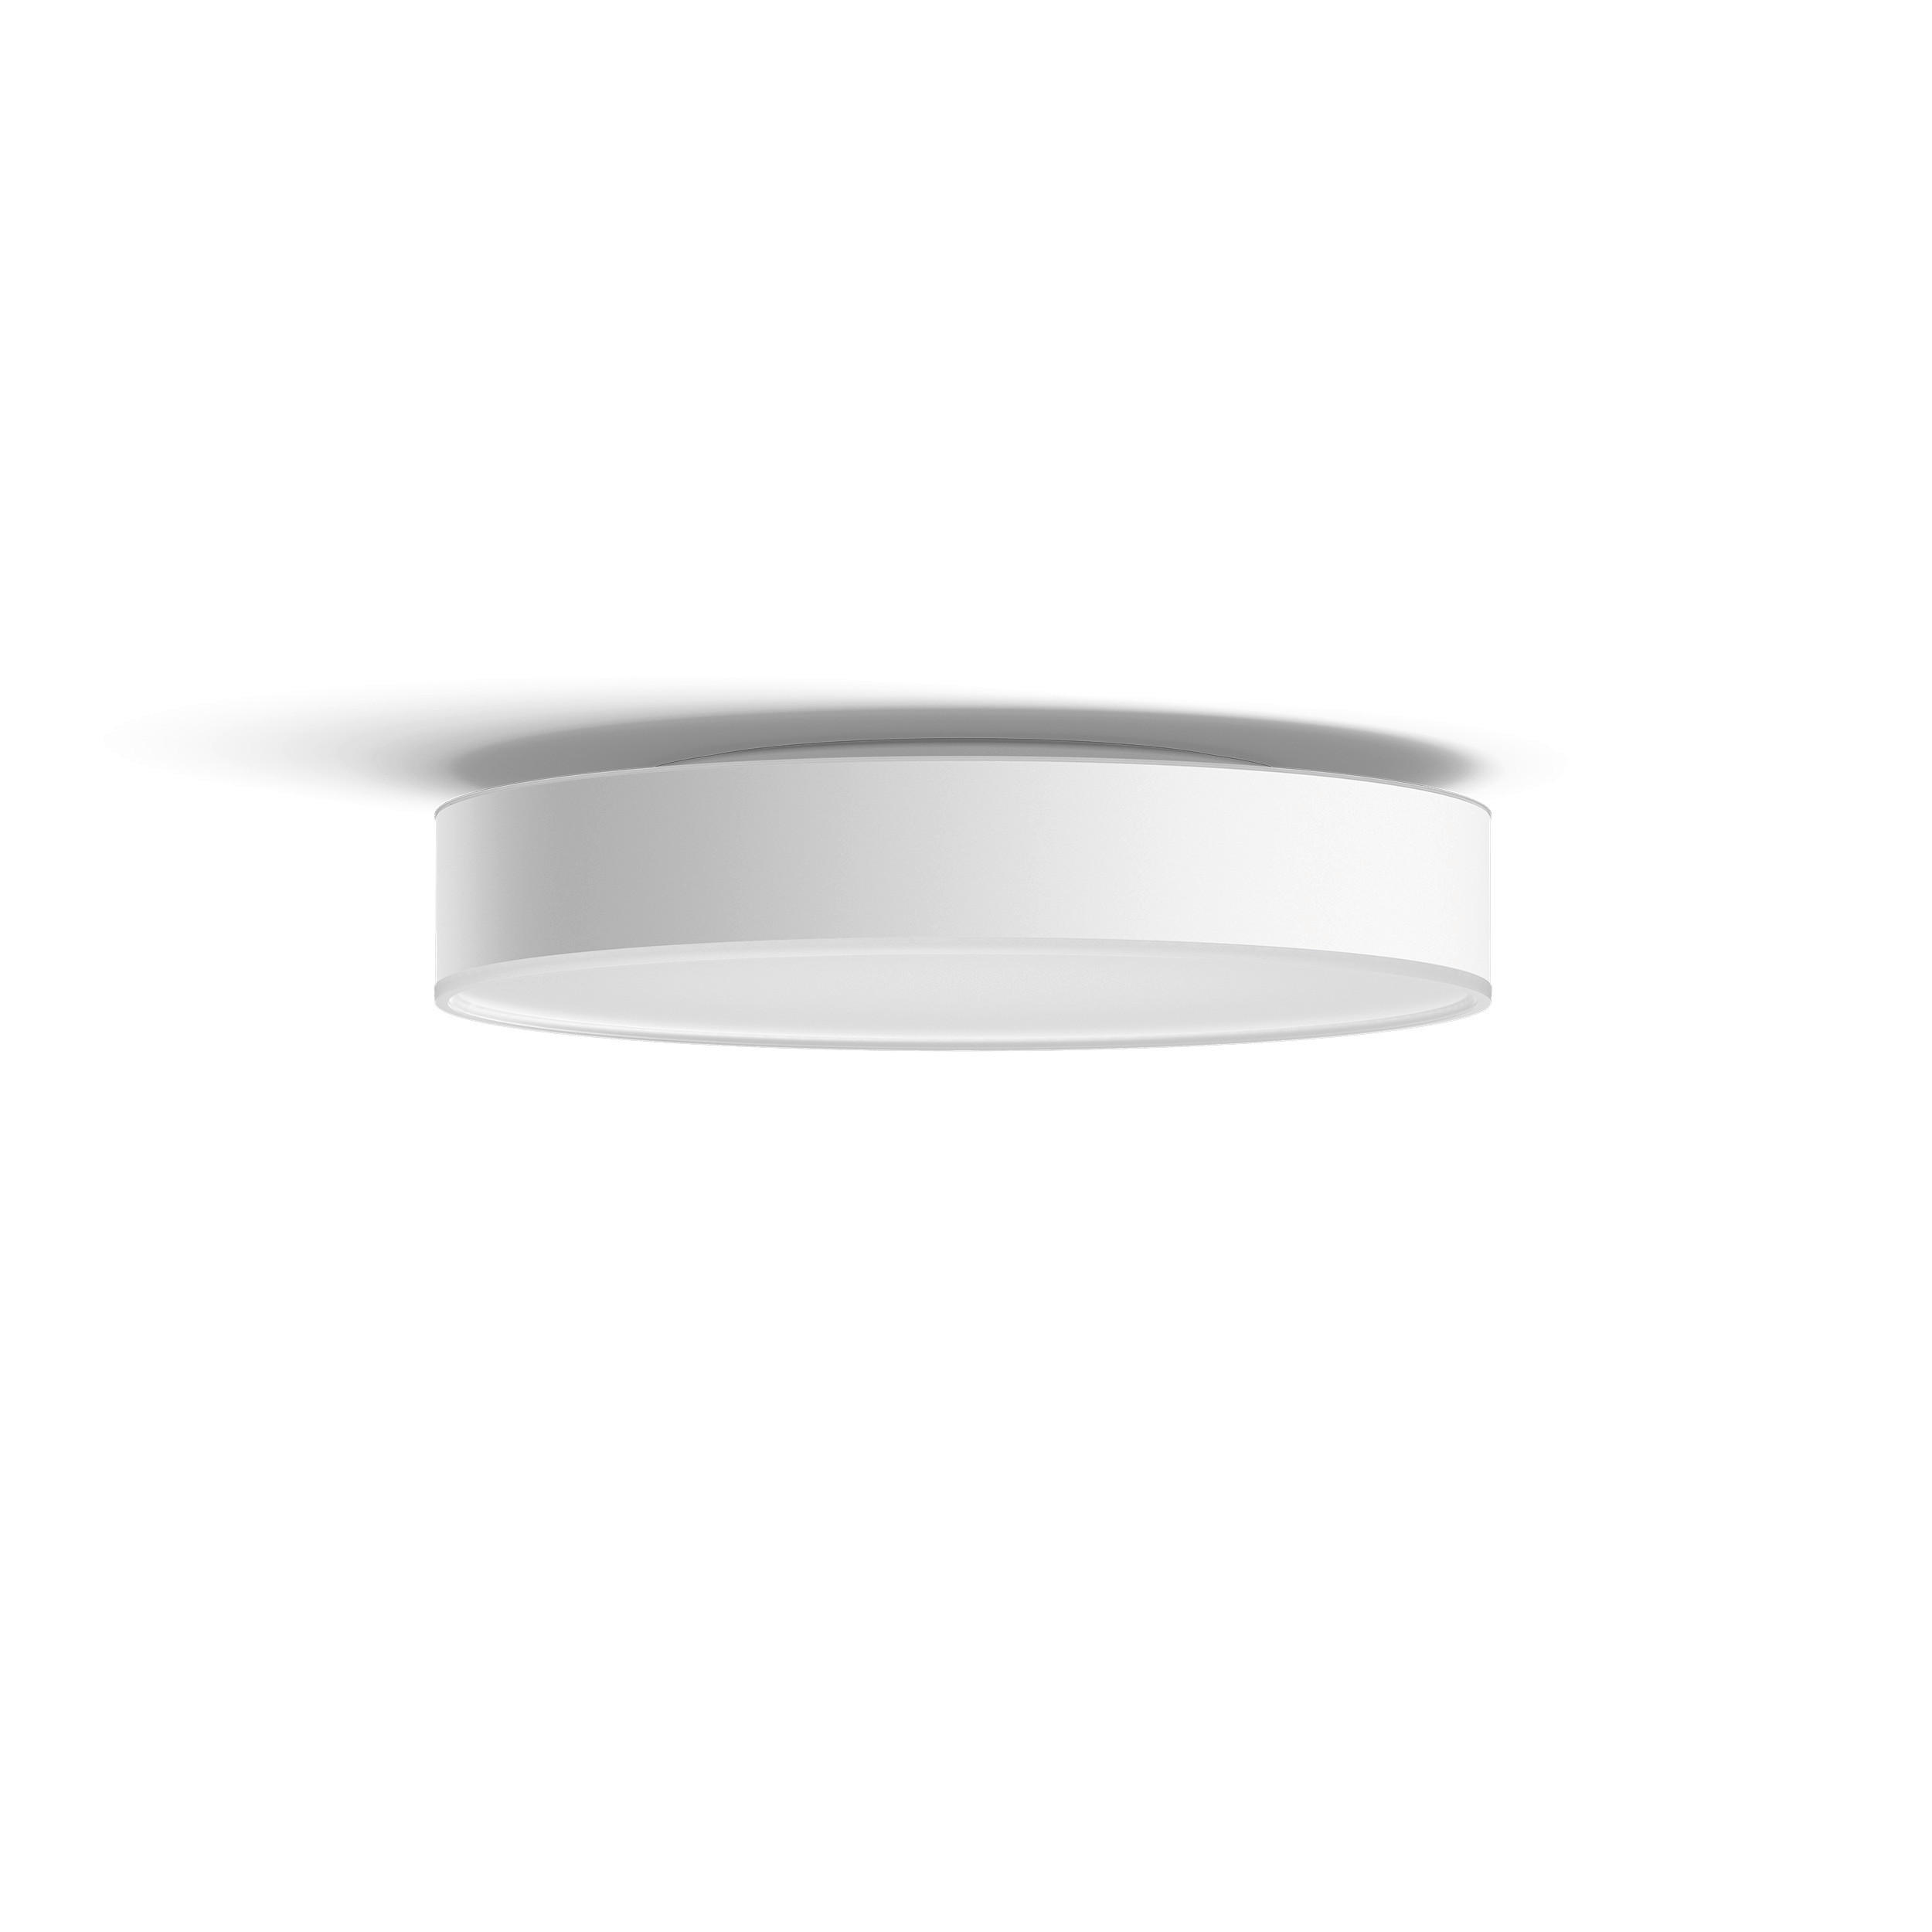 LED-DECKENLEUCHTE Enrave M 38,1/8,4 cm   - Weiß, Design, Kunststoff (38,1/8,4cm) - Philips HUE